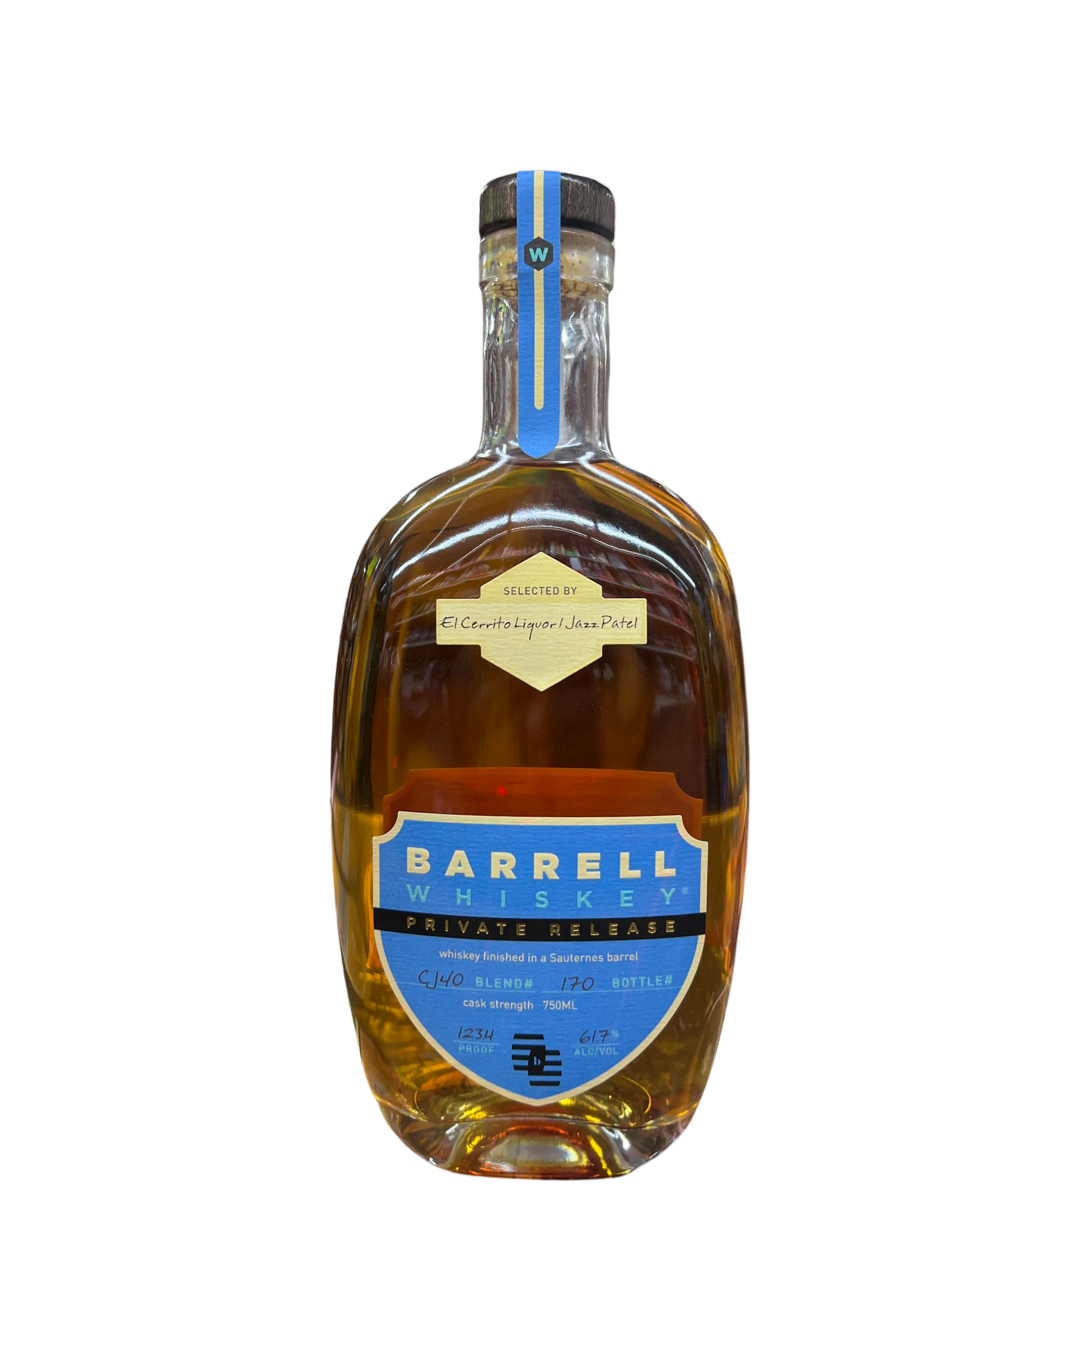 Barrell Whiskey Finished in Sauternes Barrel  Private Release El Cerrito store pick